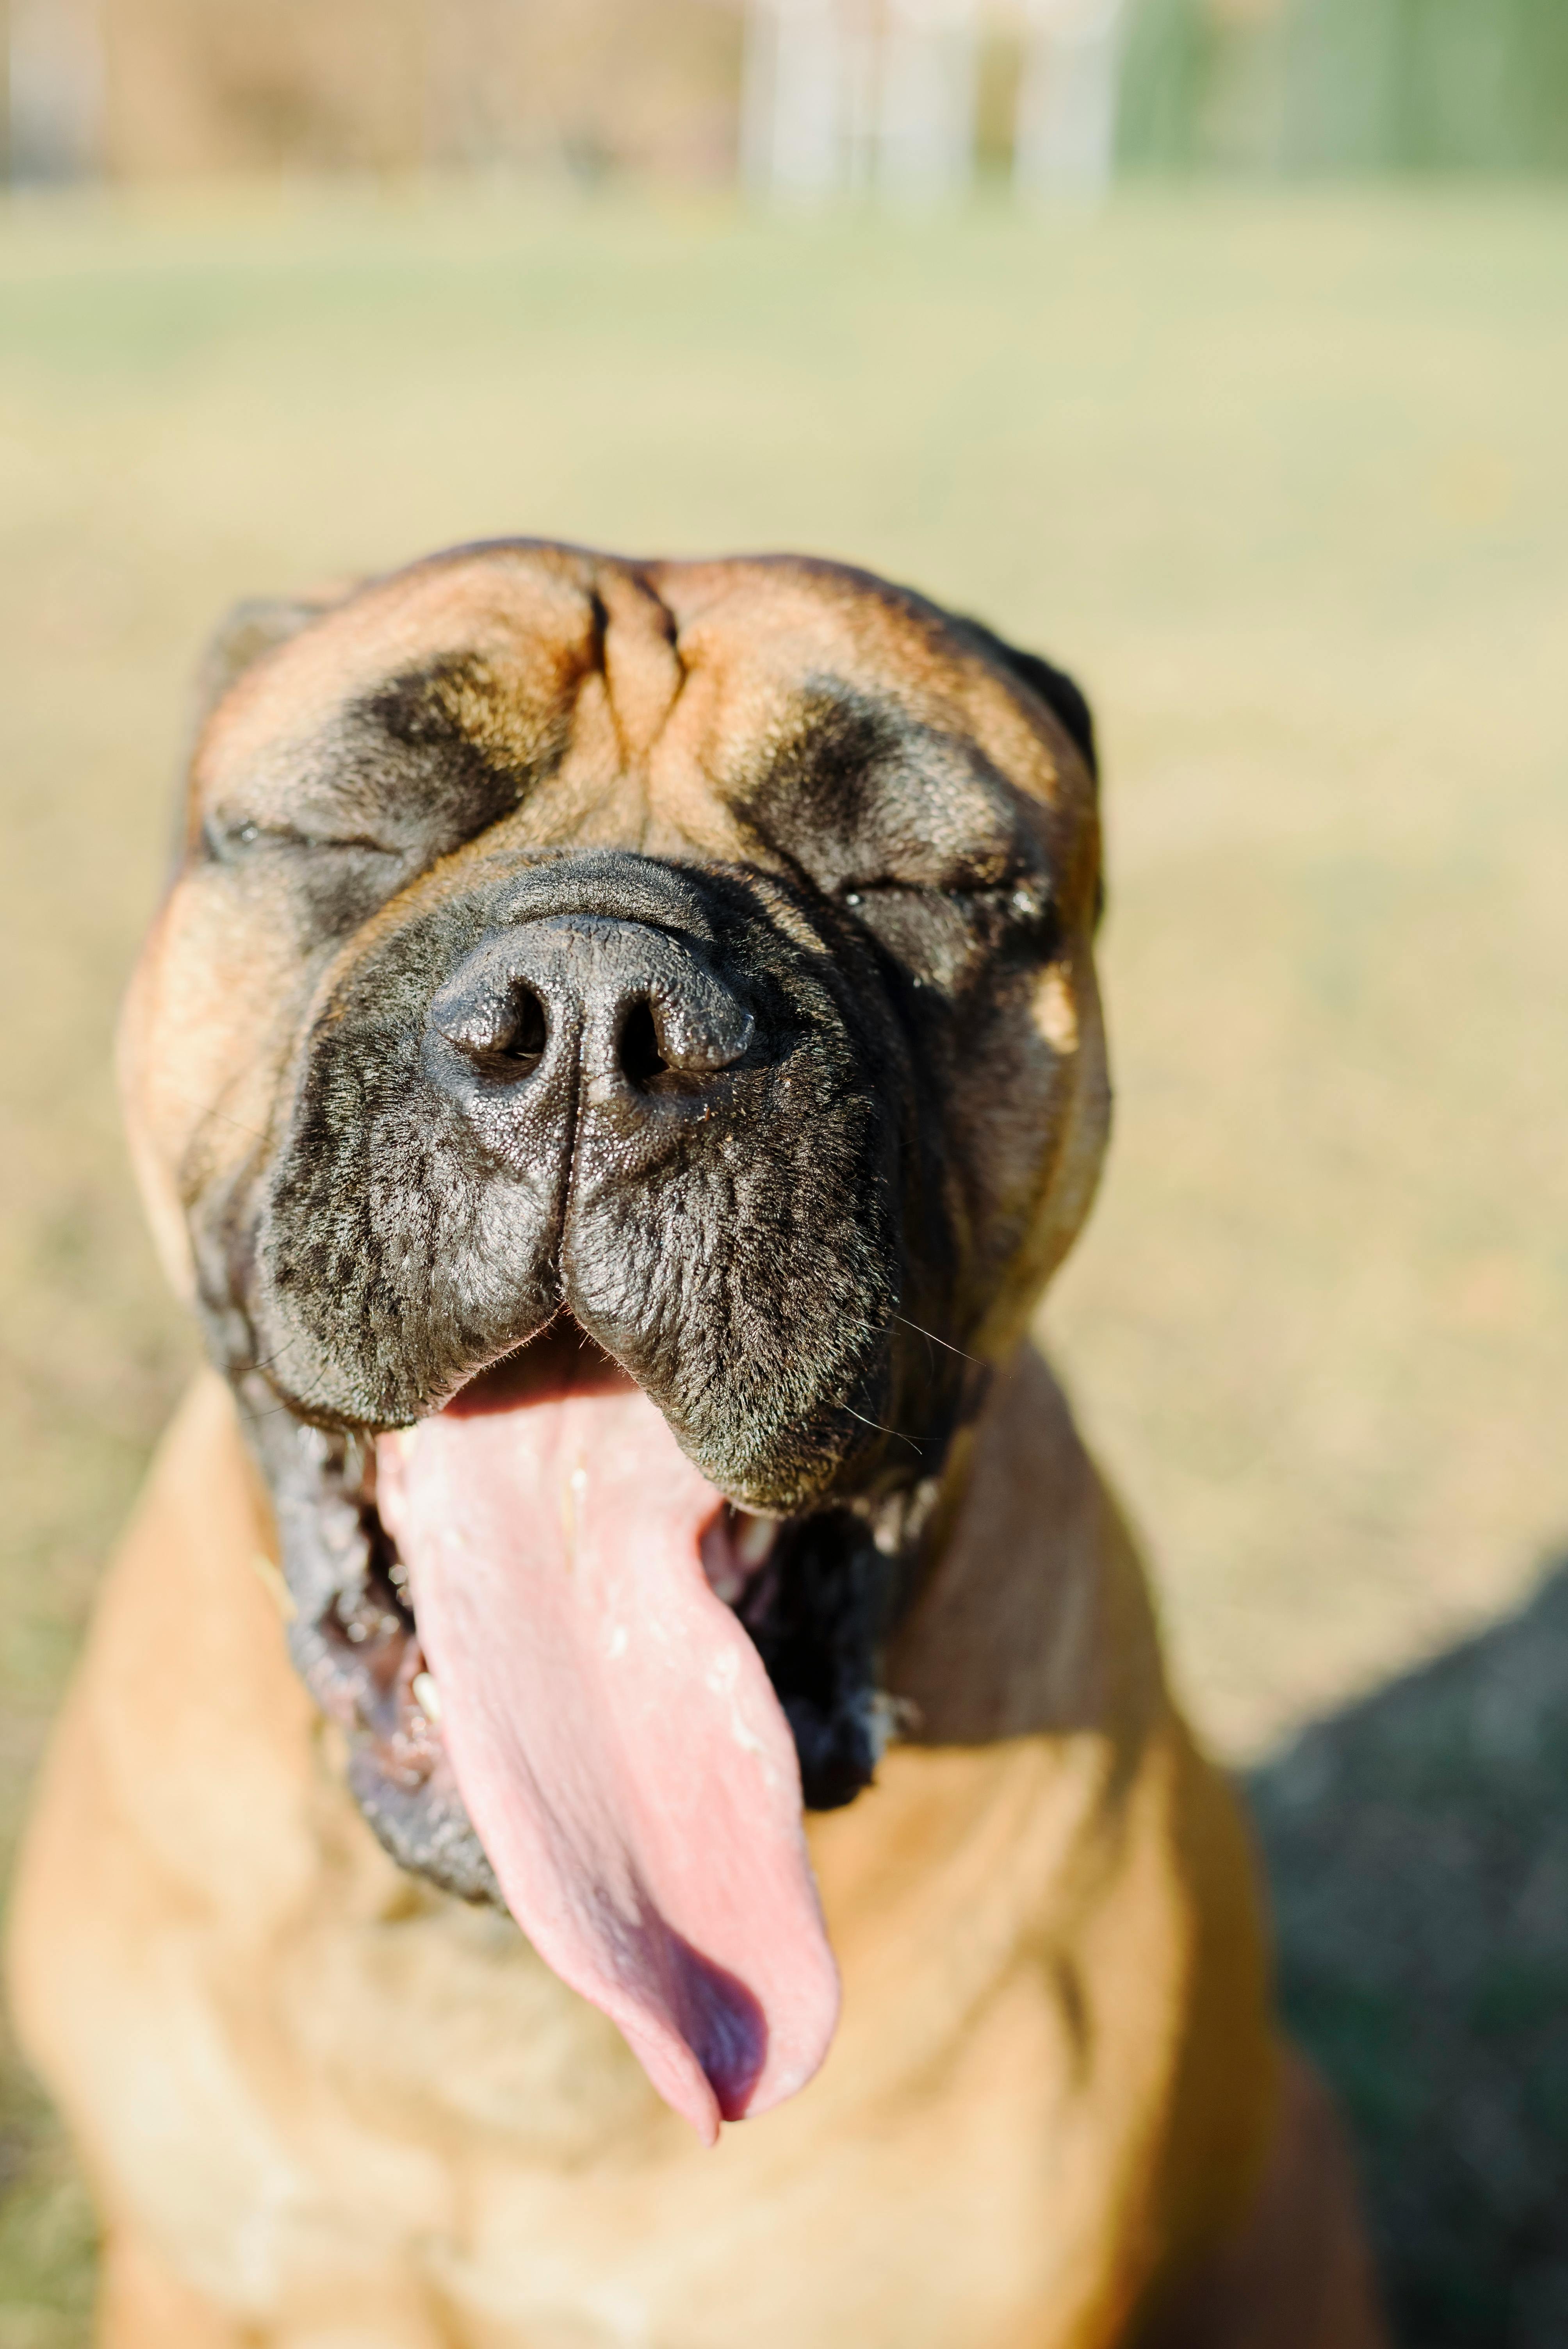 Những bức ảnh chó lè lưỡi sẽ khiến bạn cảm thấy đáng yêu và kích thích trái tim của bạn. Hãy xem các bức ảnh này để cảm nhận được sự tinh nghịch và vui nhộn của những chú cún.